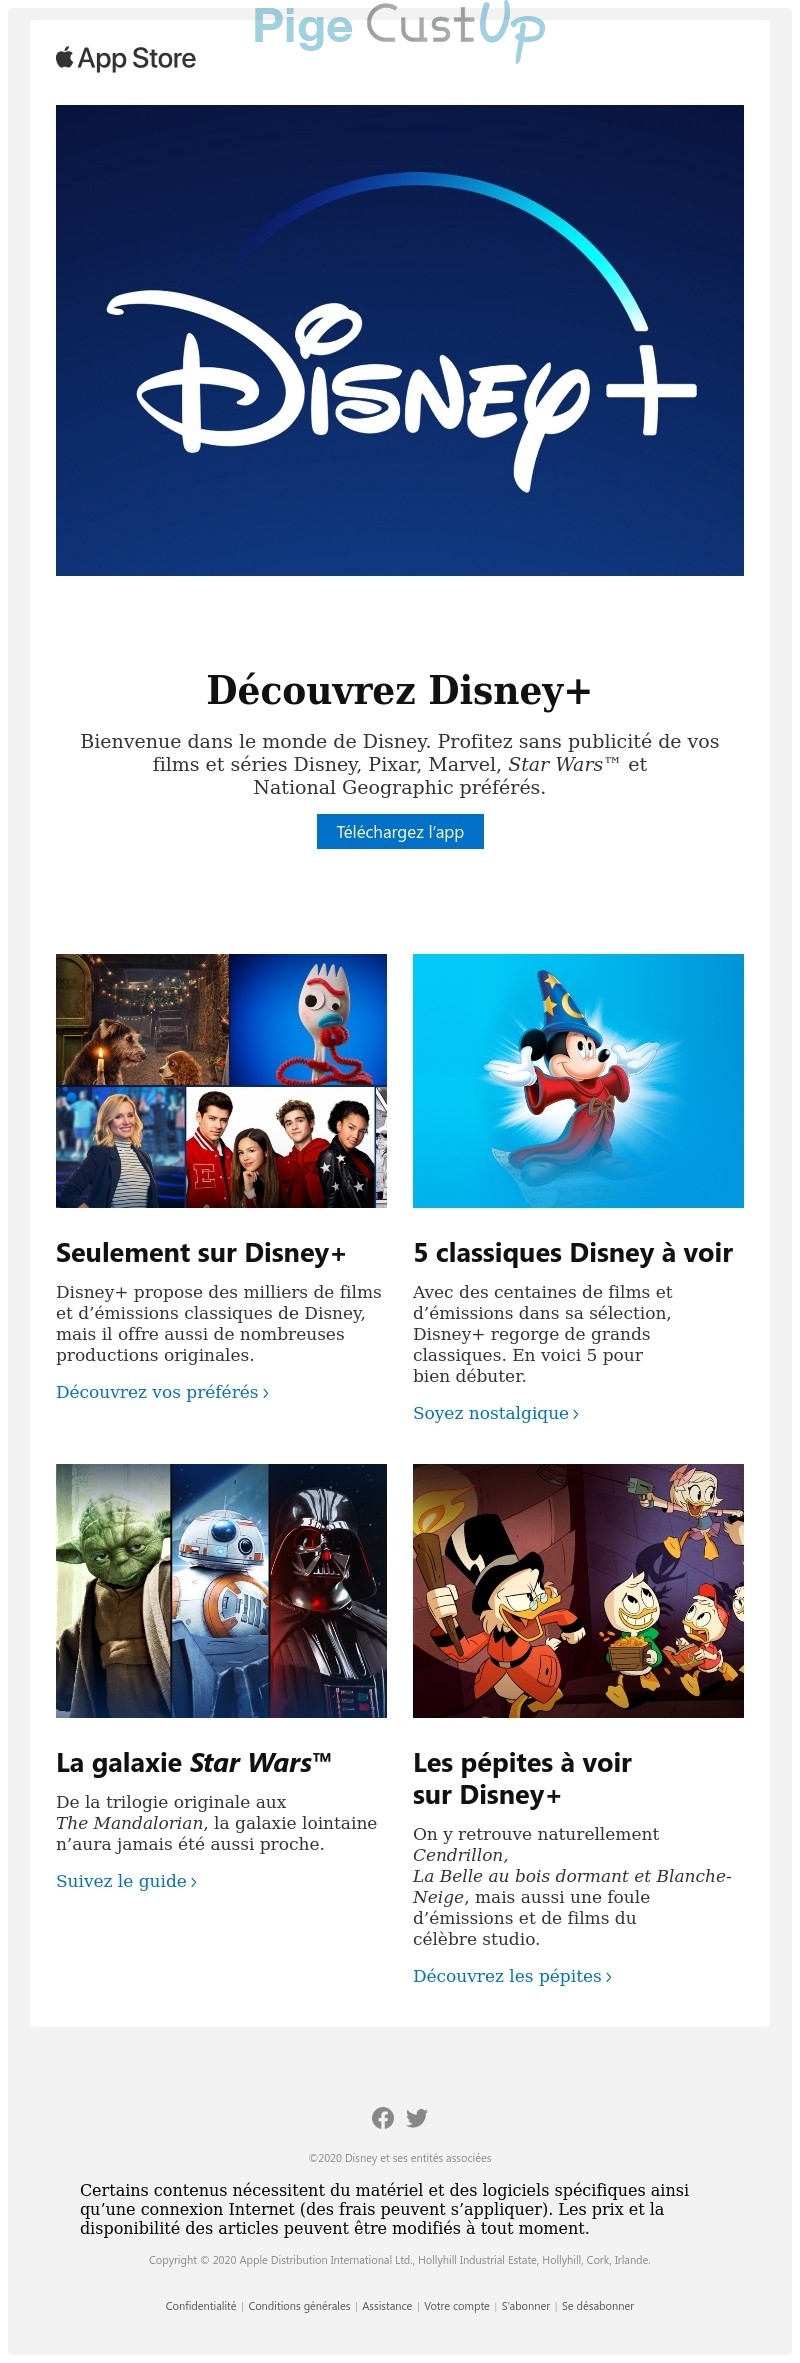 Exemple de Type de media  e-mailing - Disney - Marketing marque - Communication Services - Nouveaux Services